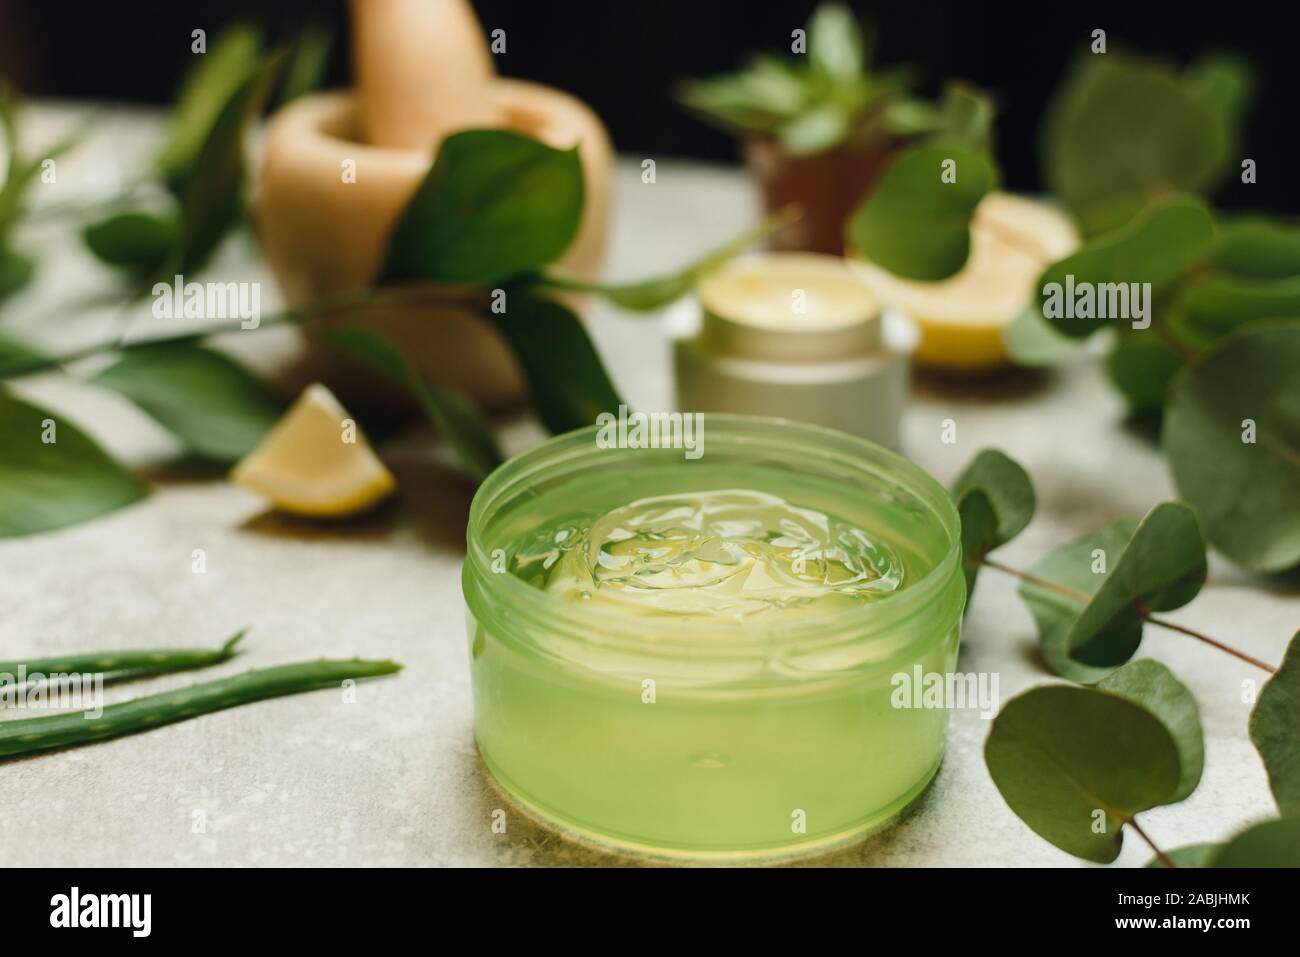 Création de produits cosmétiques naturels de plantes, naturel . La crème  pour le visage et le gel d'aloès en pots sur un fond orange gris.  Dermatologie hygiène cosmétiques à base de plantes